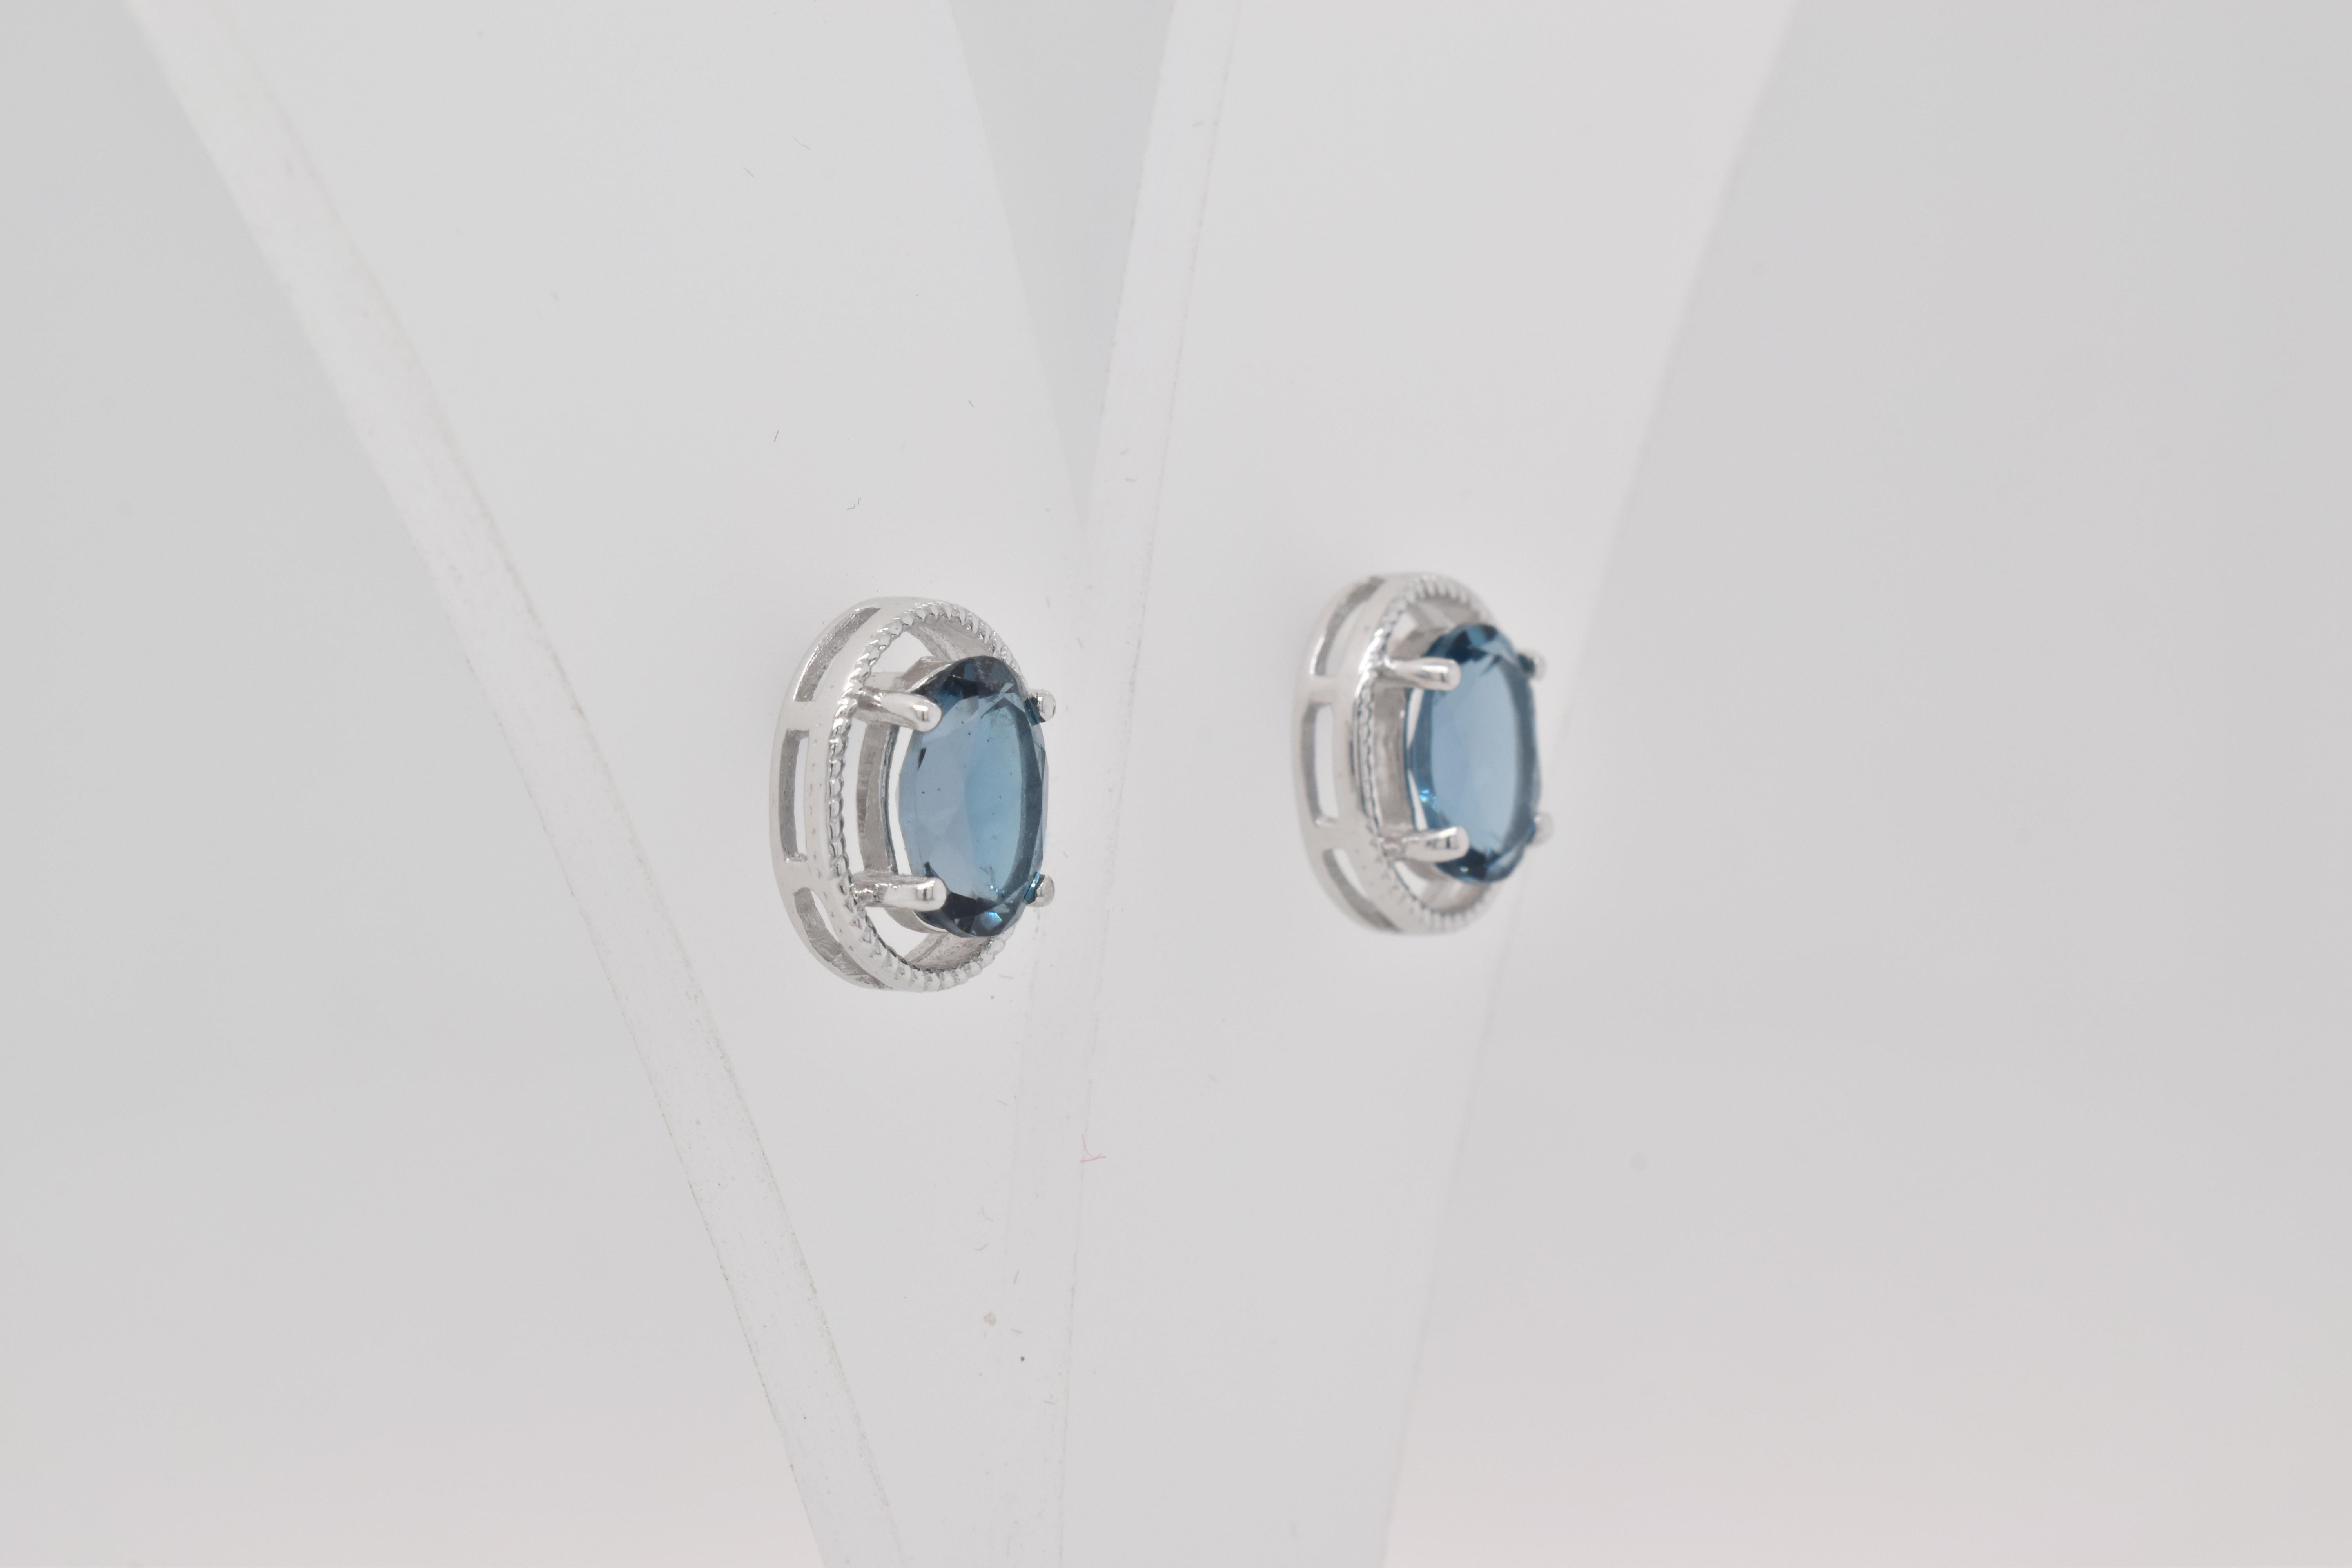 Ovale Form Londoner Blautopas Edelstein  handwerklich schön gemacht  in einem Ohrring. Ein feurig blauer Dezember-Geburtsstein. Für einen besonderen Anlass wie Verlobung oder Heiratsantrag oder als Geschenk für einen besonderen